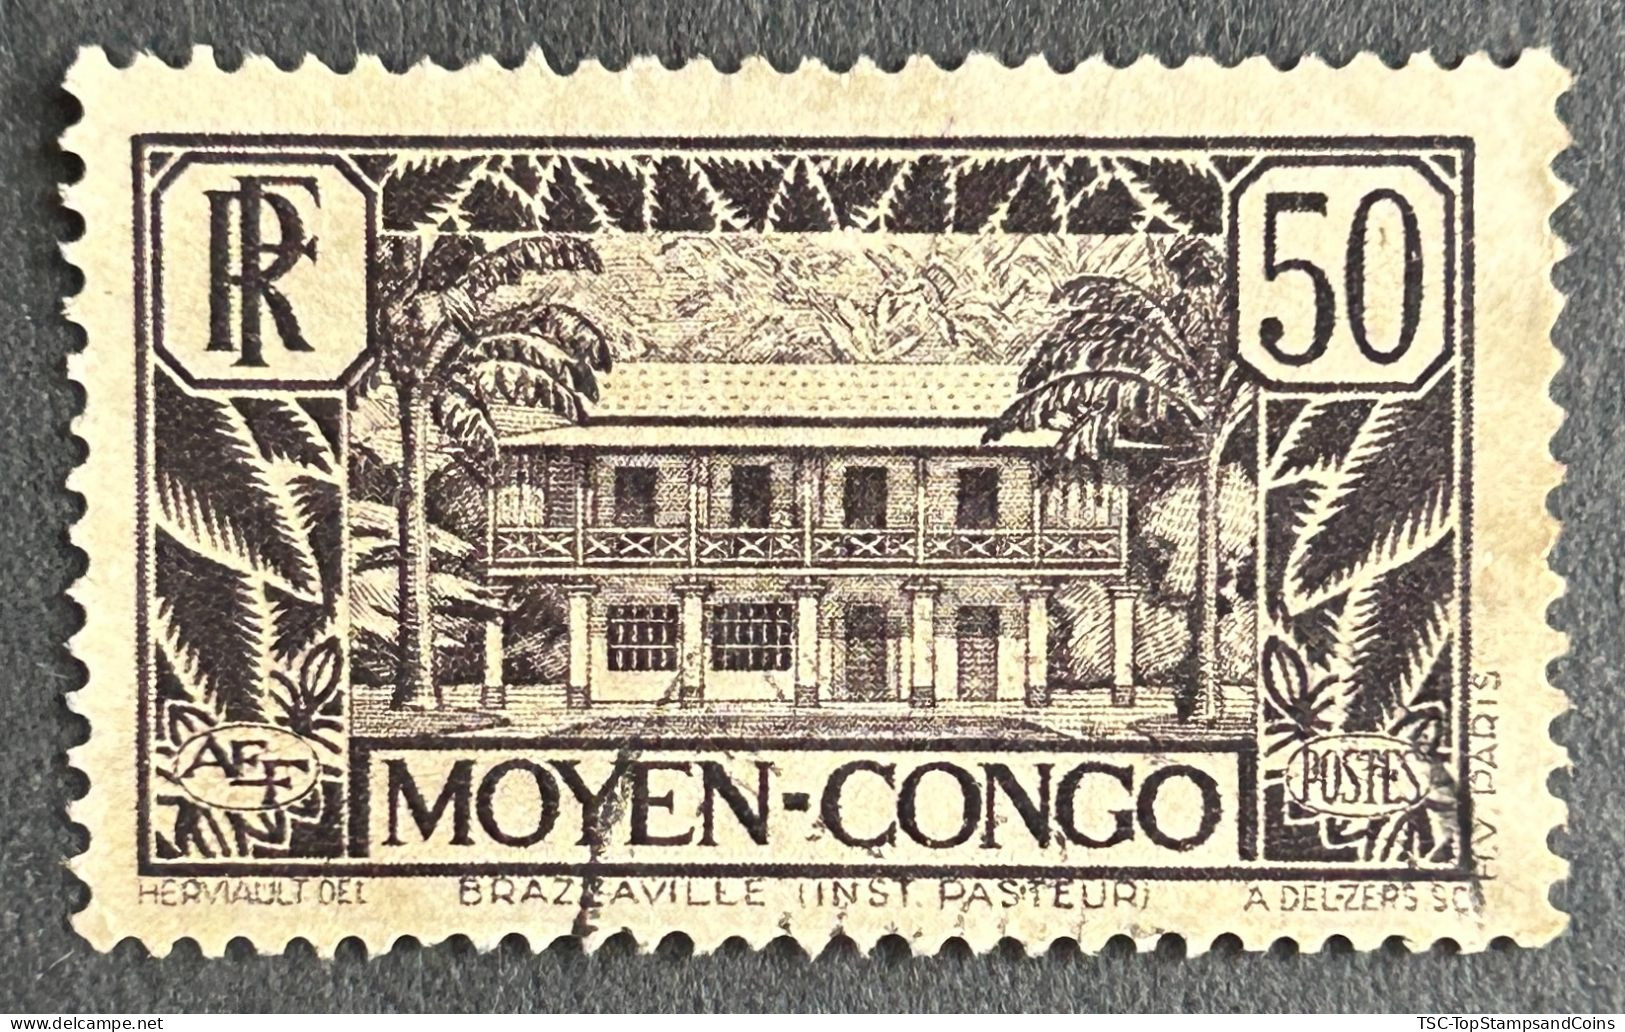 FRCG124U3 - Brazzaville - Pasteur Institute - 50 C Used Stamp - Middle Congo - 1933 - Usati